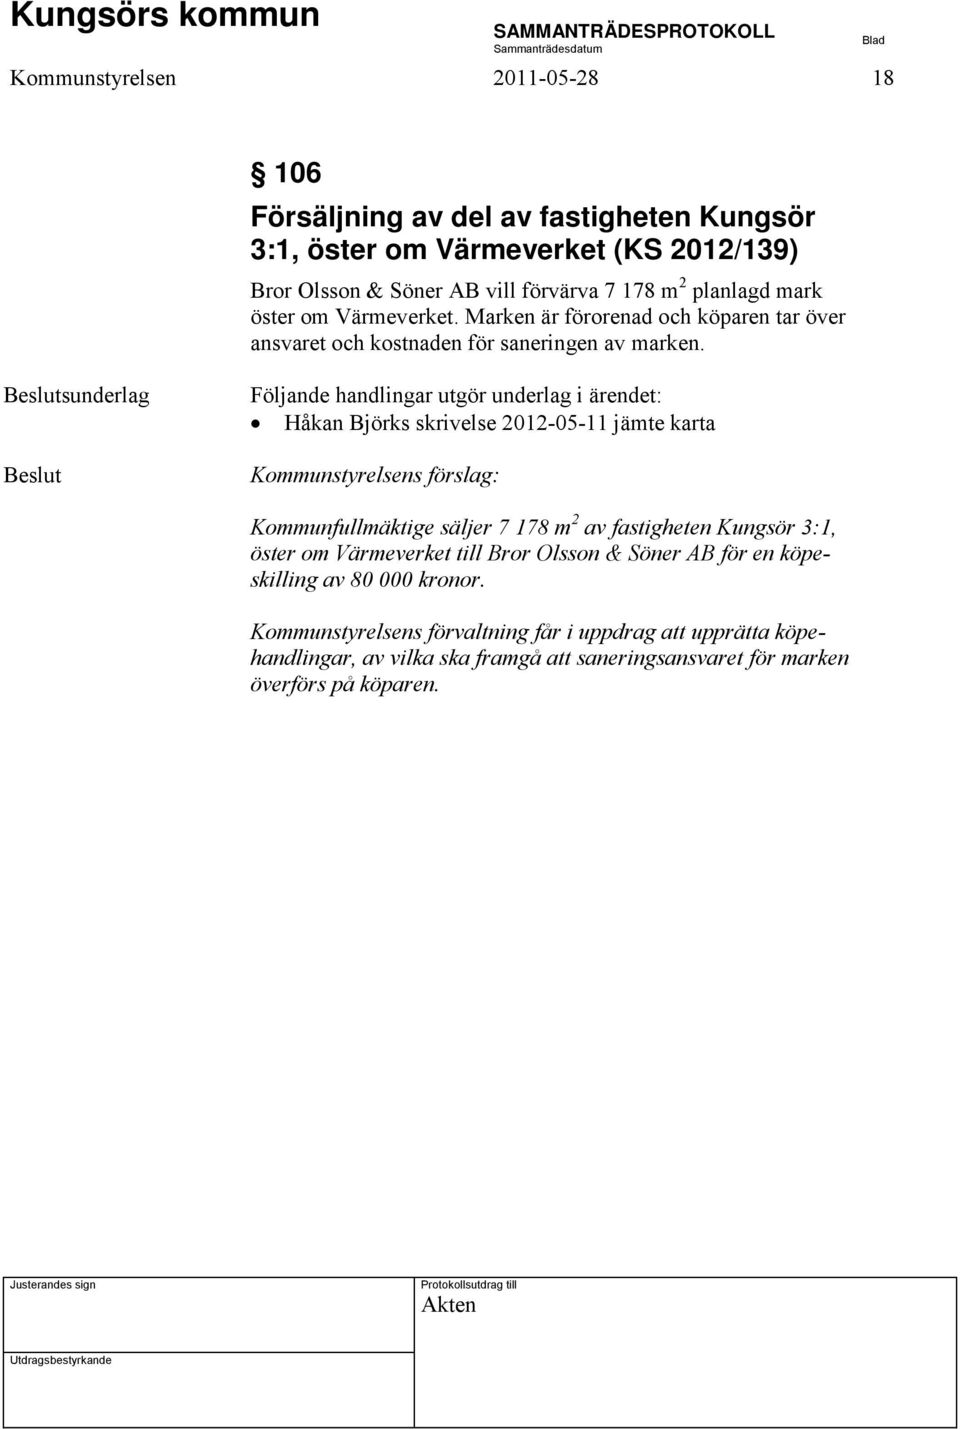 Beslutsunderlag Beslut Följande handlingar utgör underlag i ärendet: Håkan Björks skrivelse 2012-05-11 jämte karta Kommunstyrelsens förslag: Kommunfullmäktige säljer 7 178 m 2 av